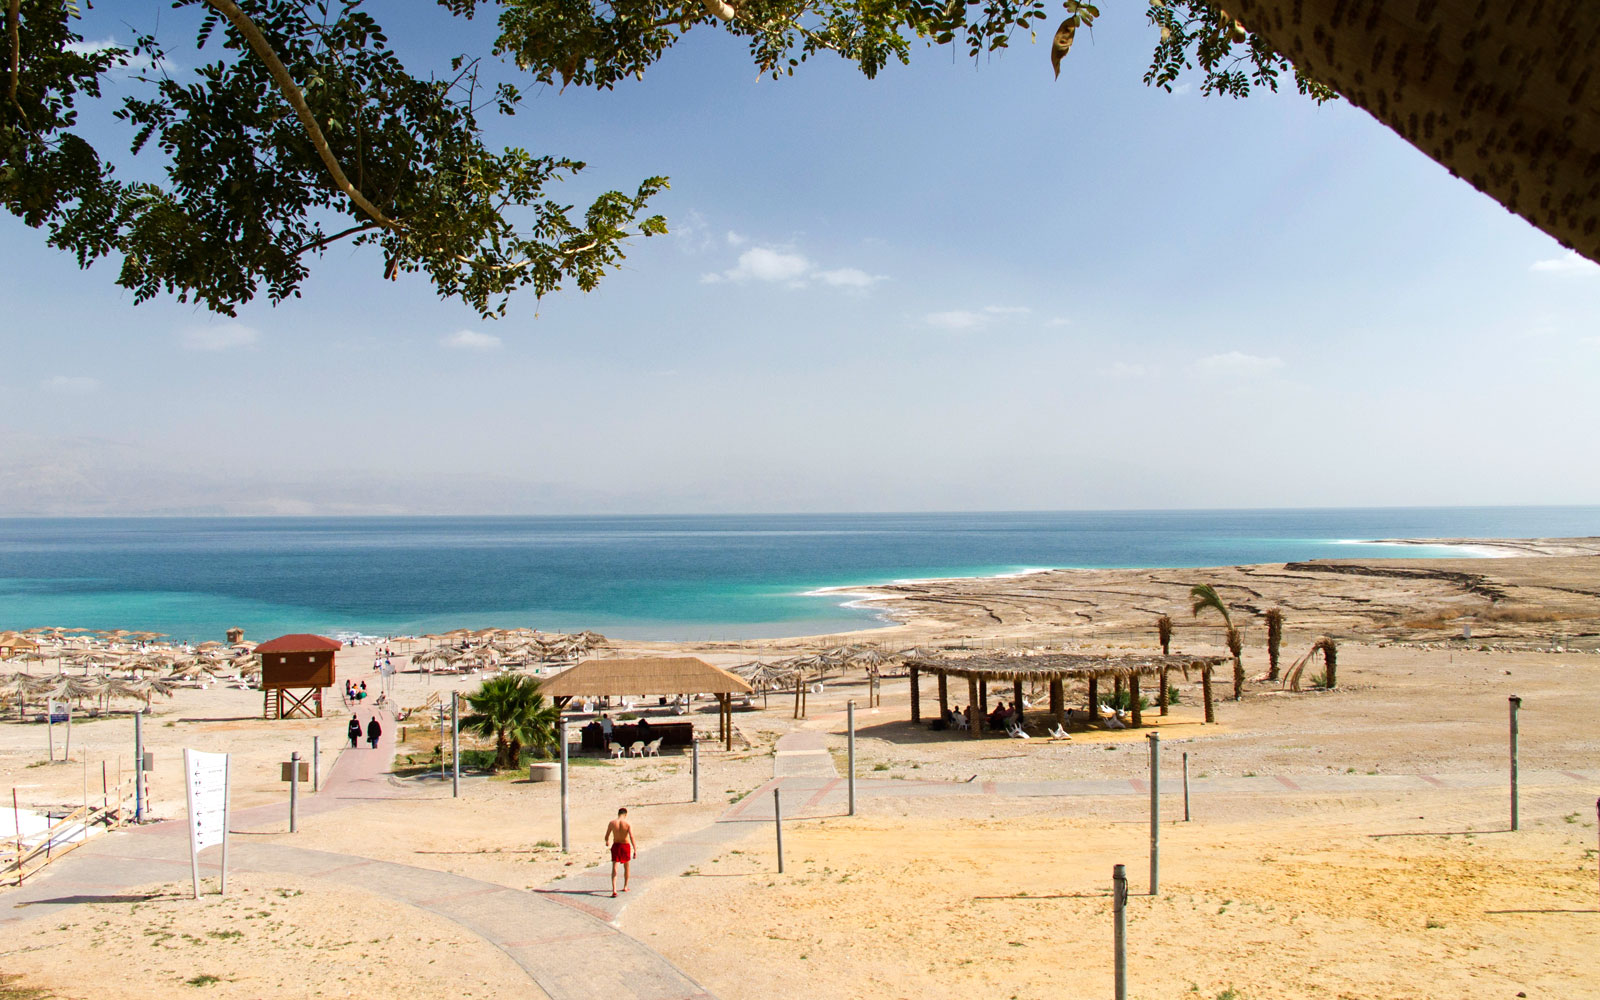 dennis baxter add nude beach in israel photo